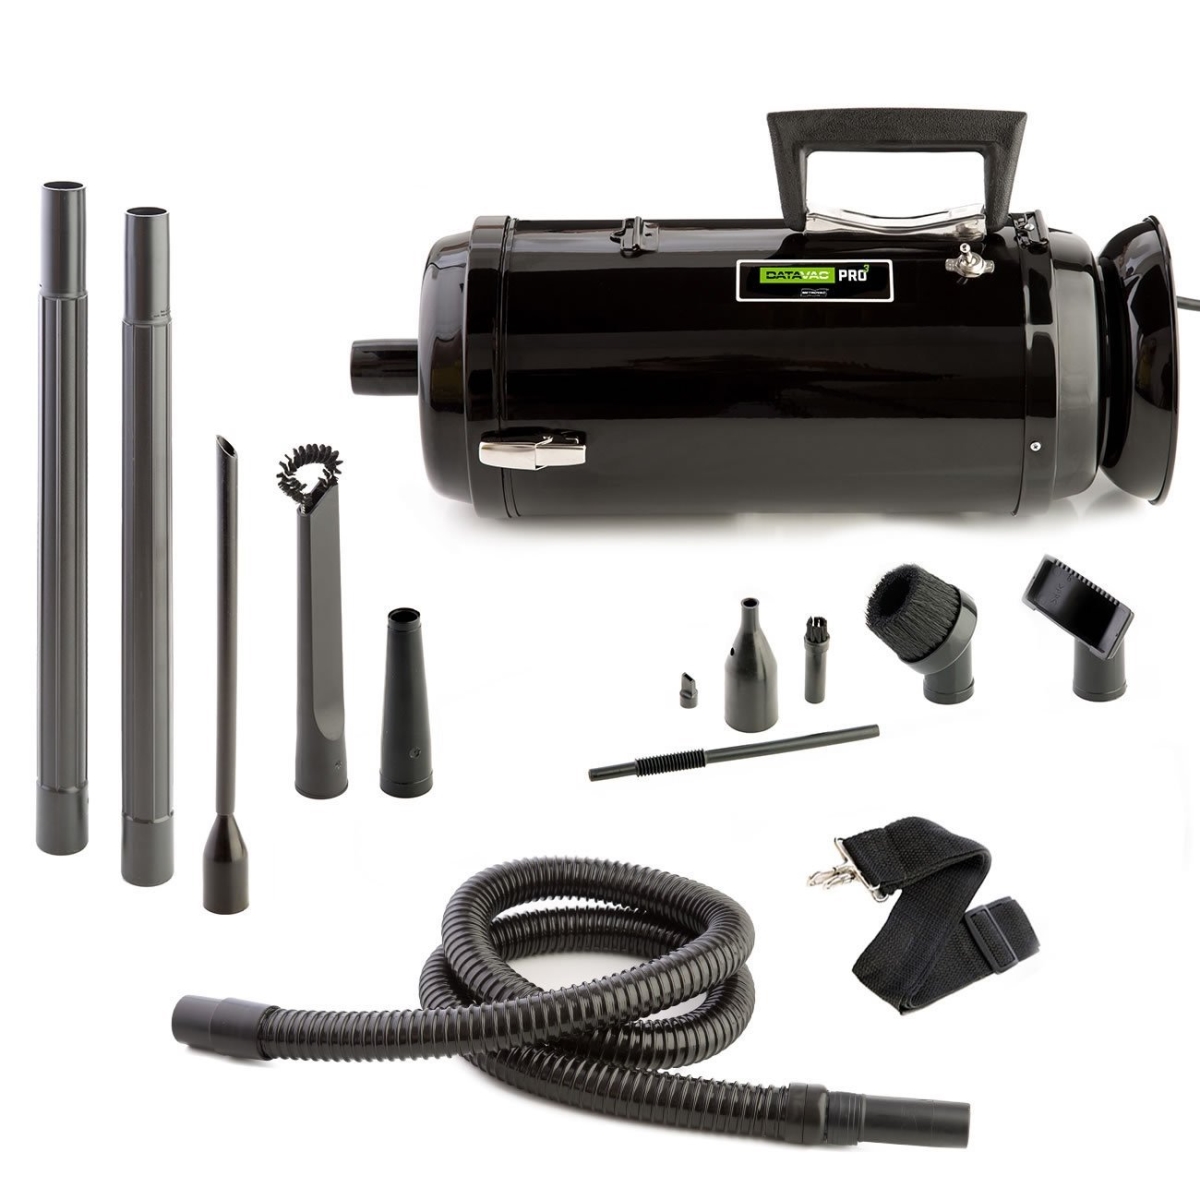 Mdv-3ta Metro Datavacuum Pro Series Toner Vacuum With Micro Cleaning Tools - Pack Of 4